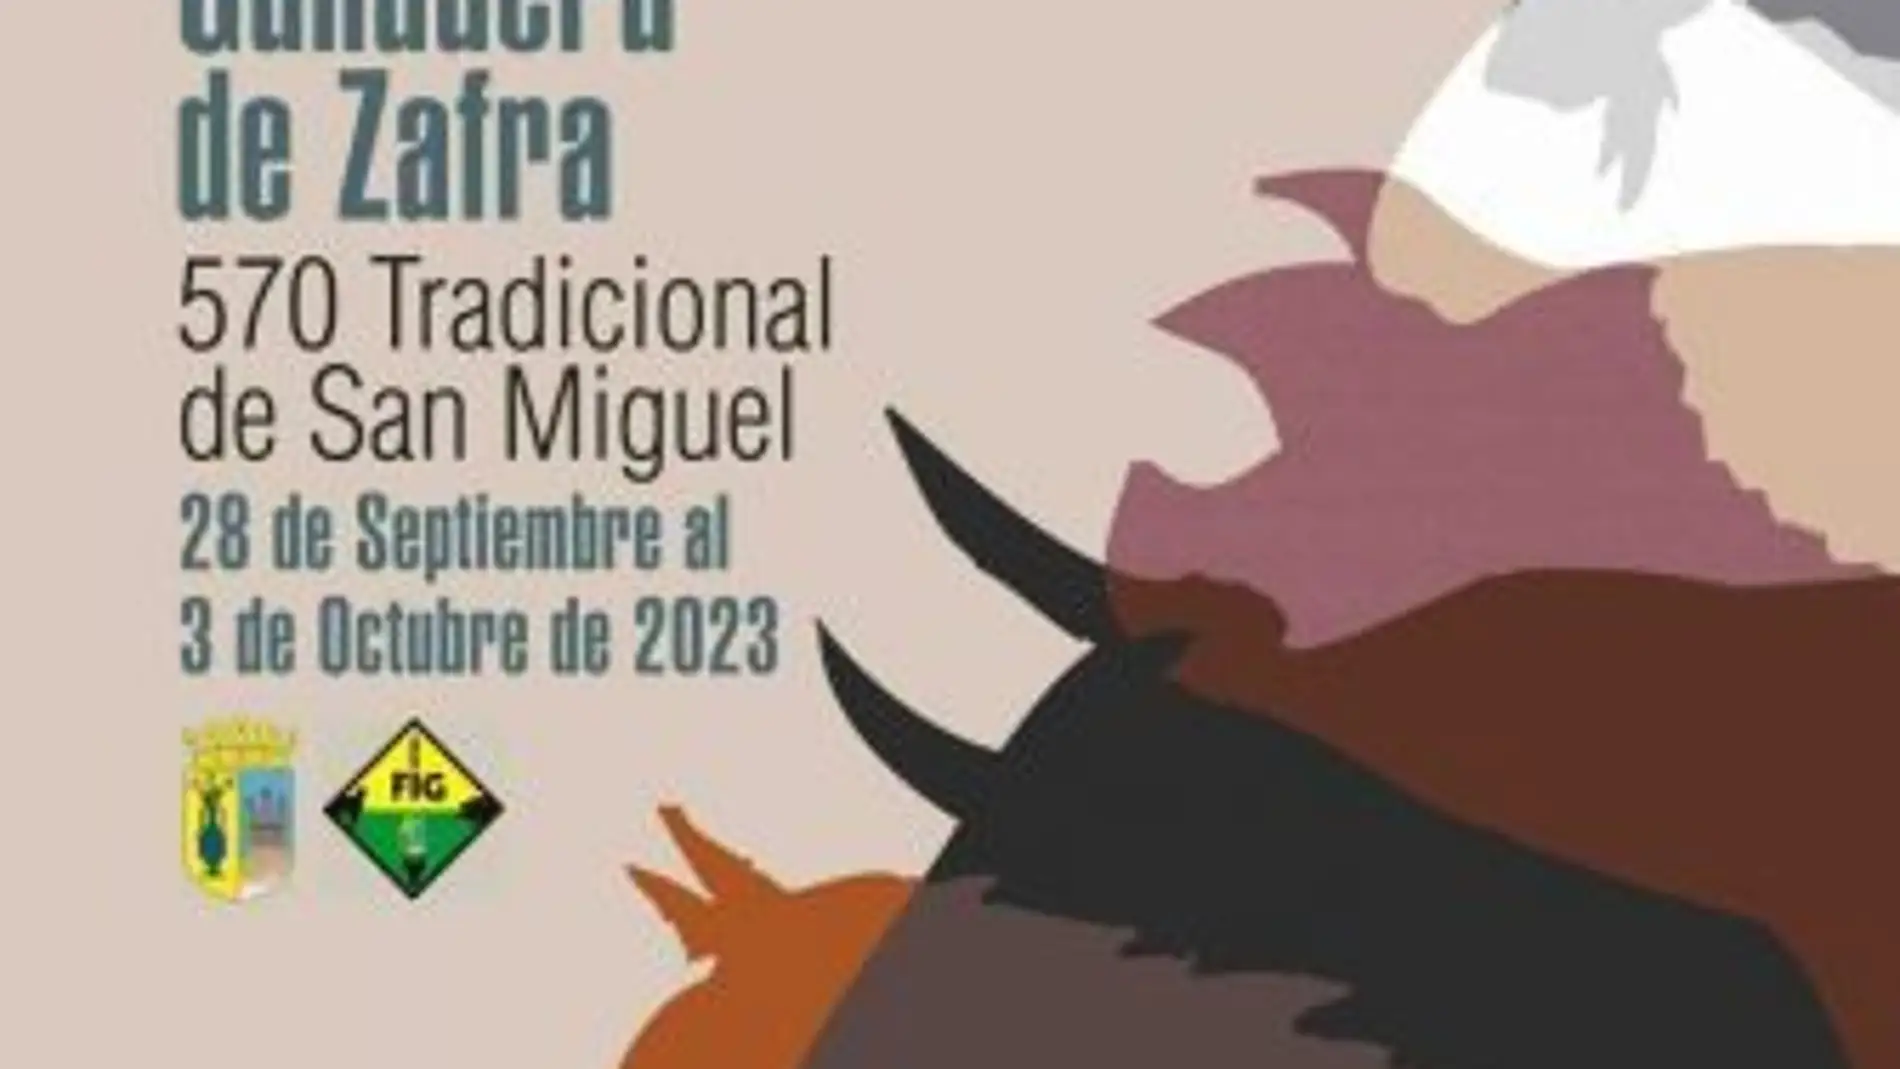 Este jueves 28 arranca La Feria Internacional Ganadera de Zafra y 570ª Tradicional de San Miguel